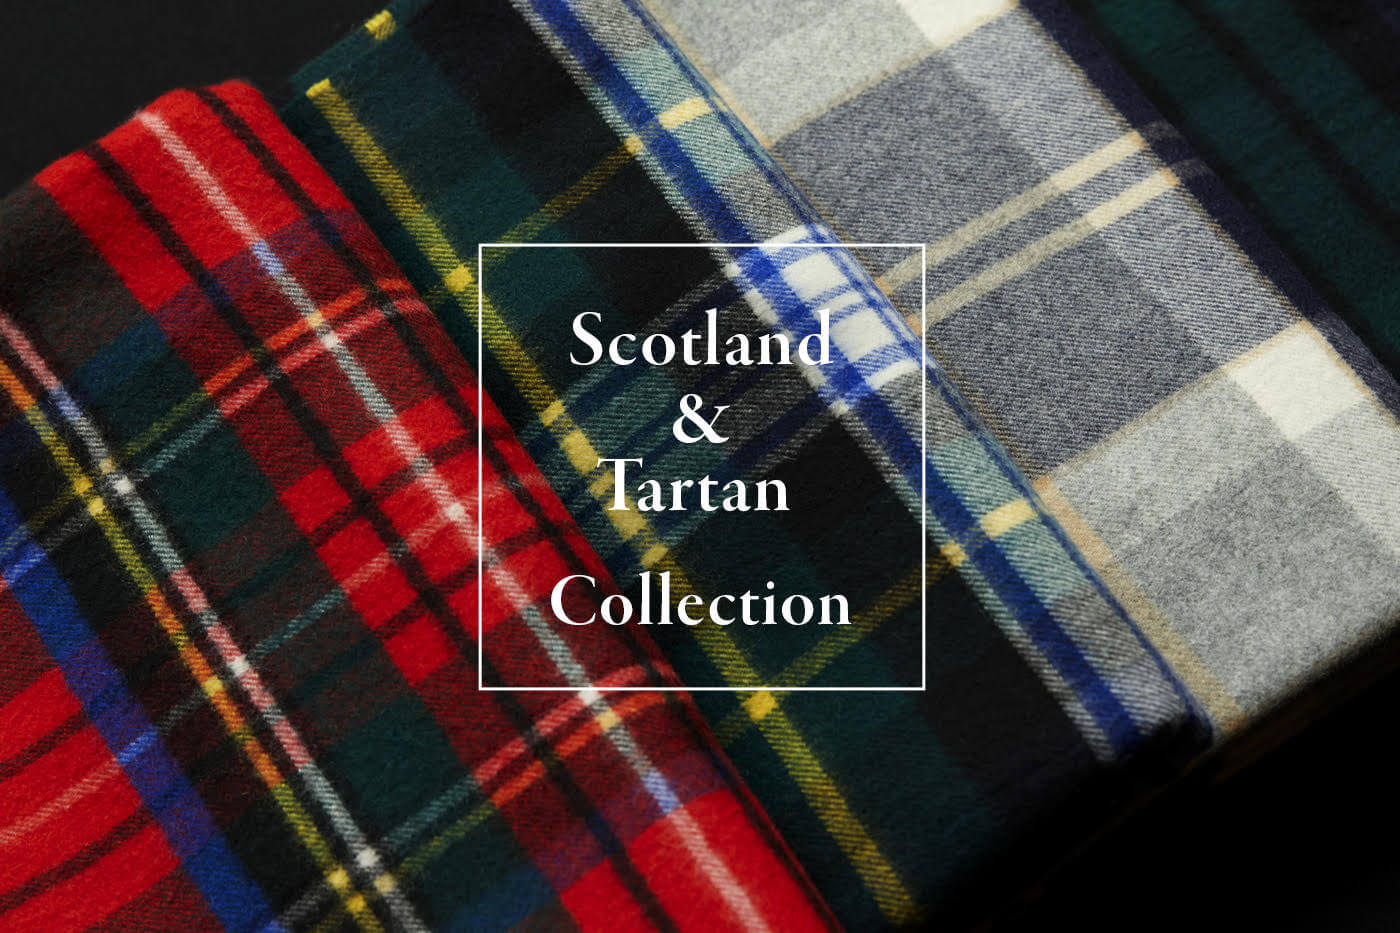 Scotland & Tartan Collection